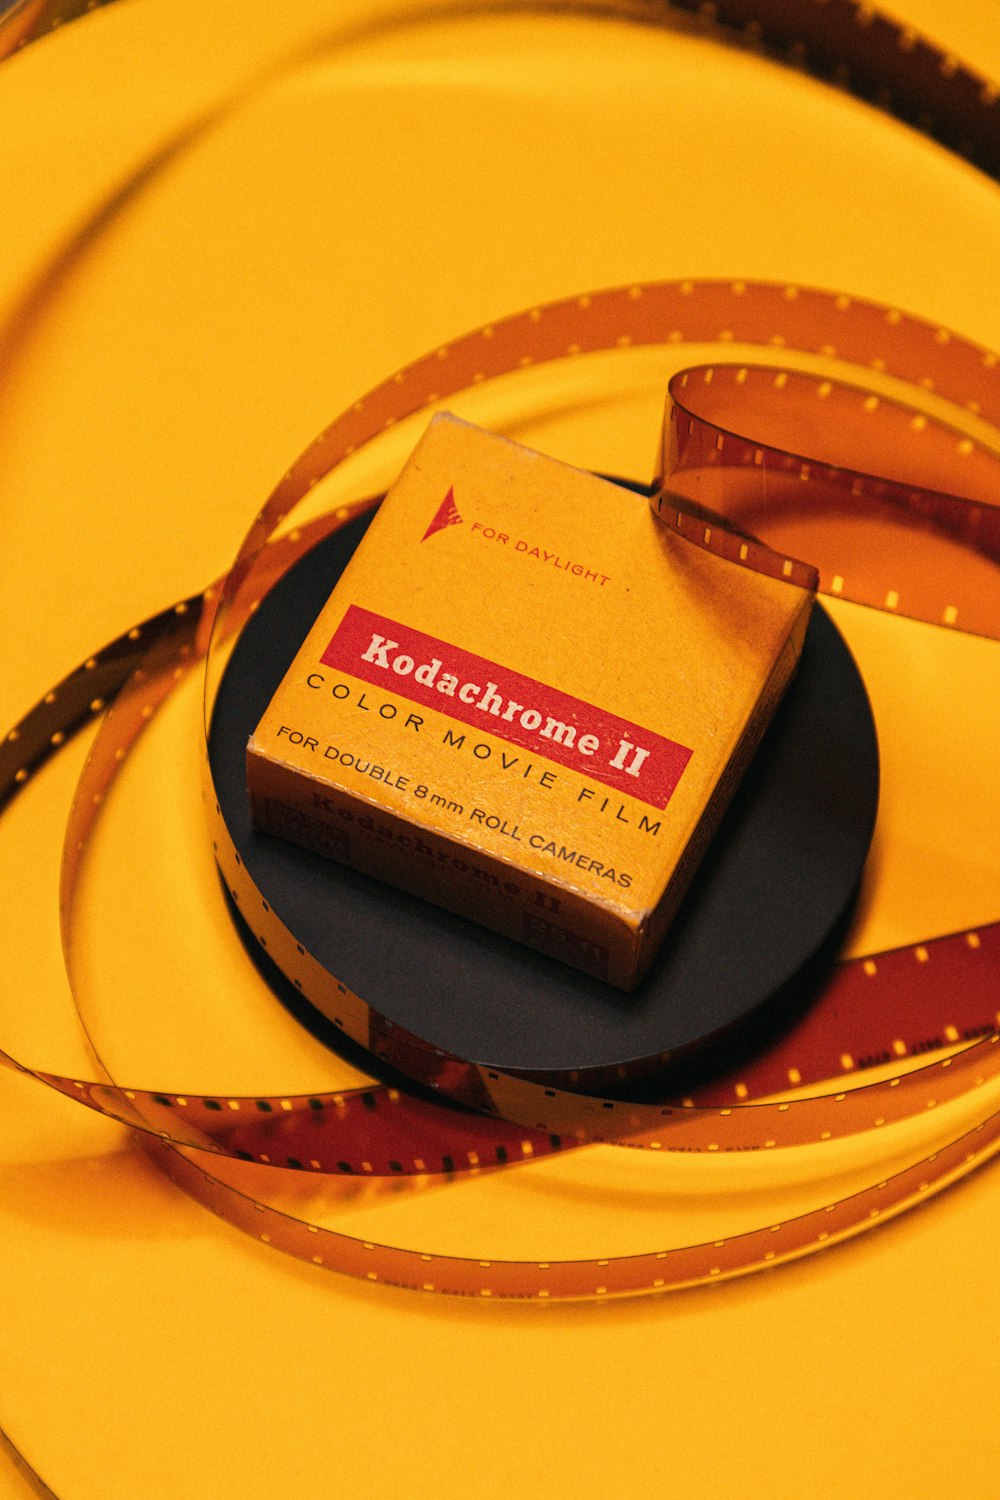 Kodachrome 2 caixa de filme de filme colorido